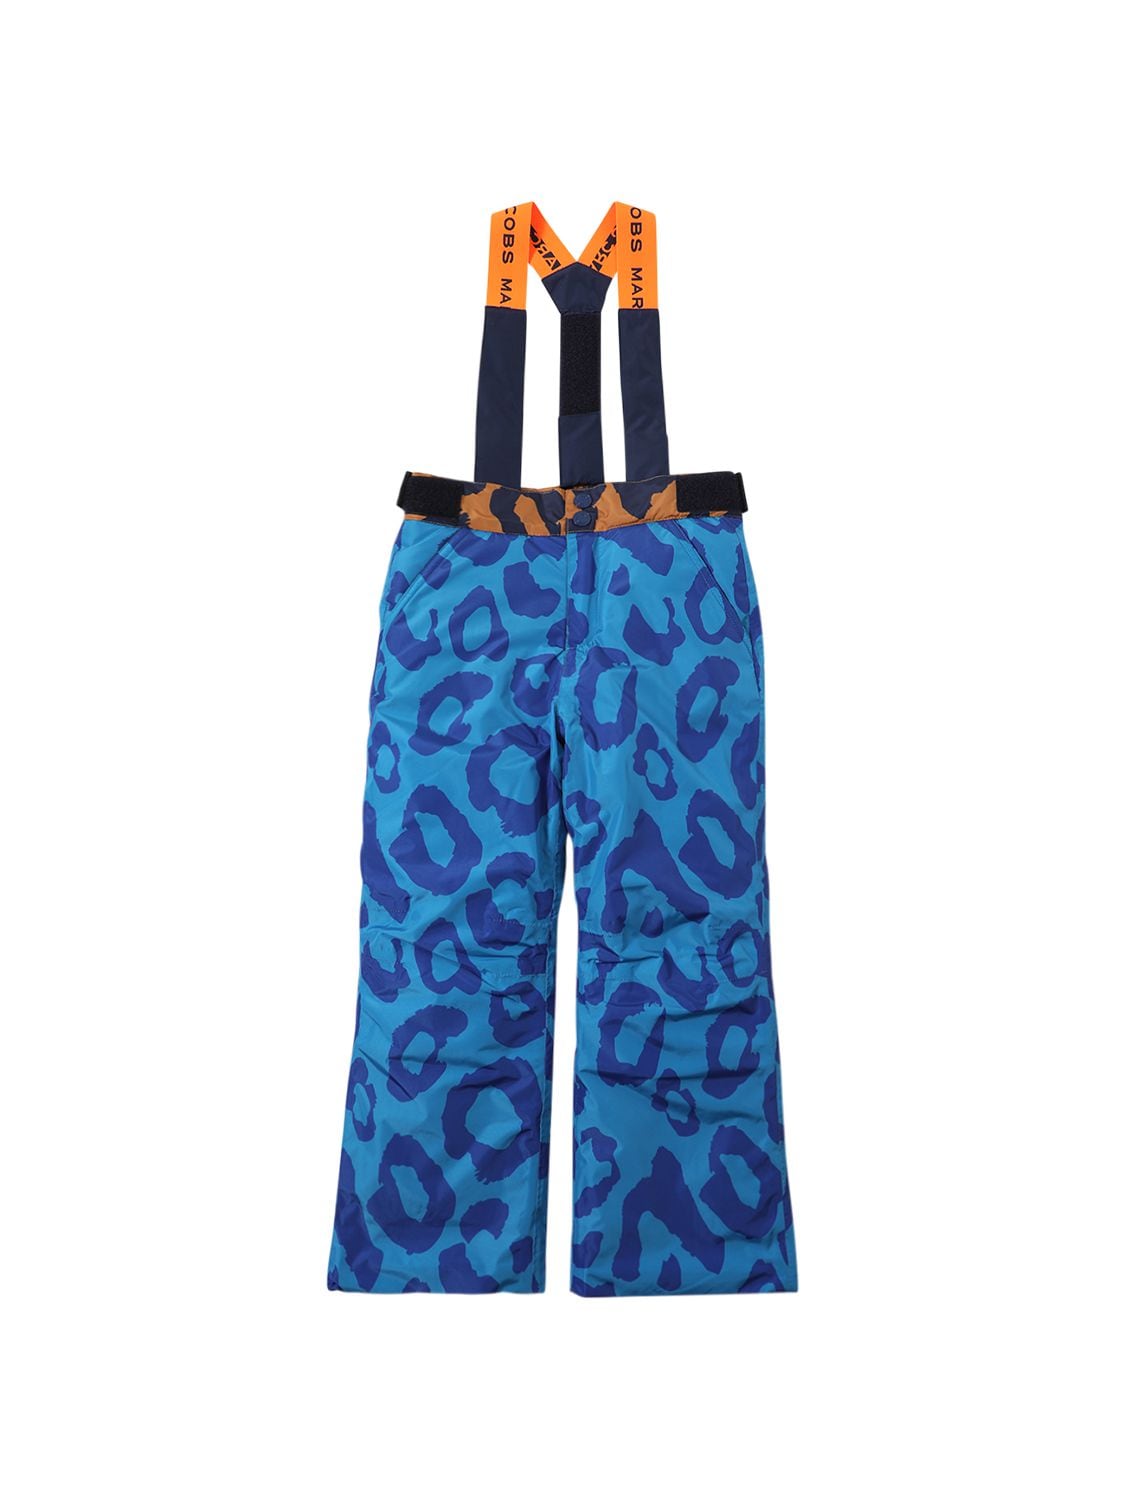 Image of Printed Nylon Ski Pants